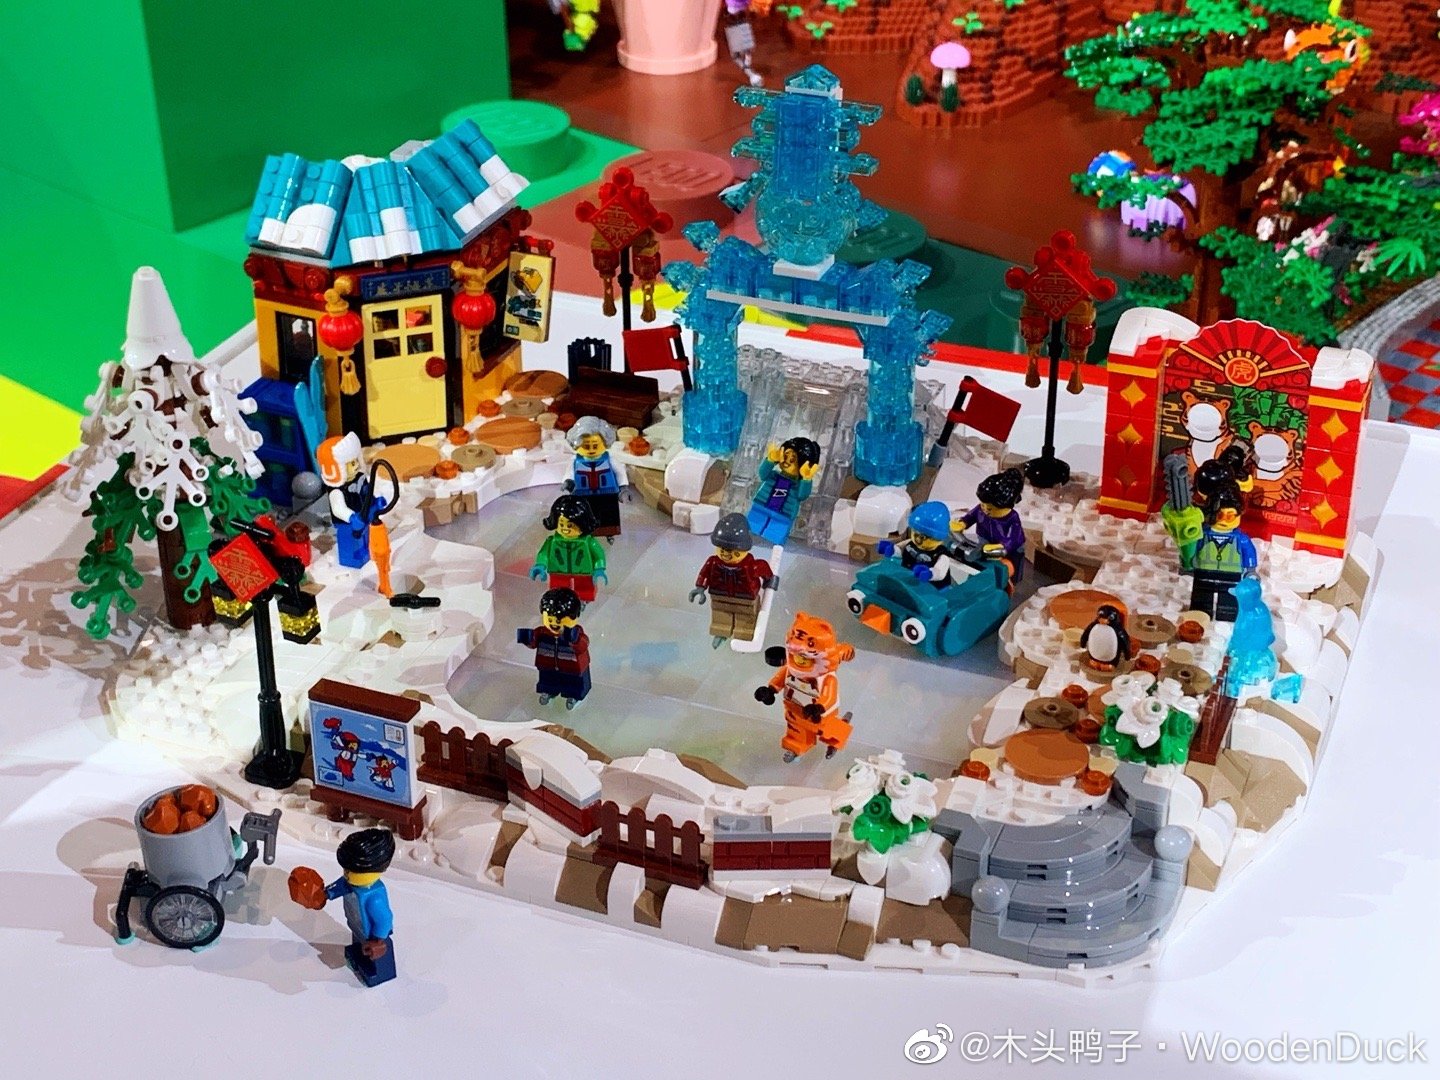 Les modèles LEGO du Nouvel An chinois 2022 ont été dévoilés